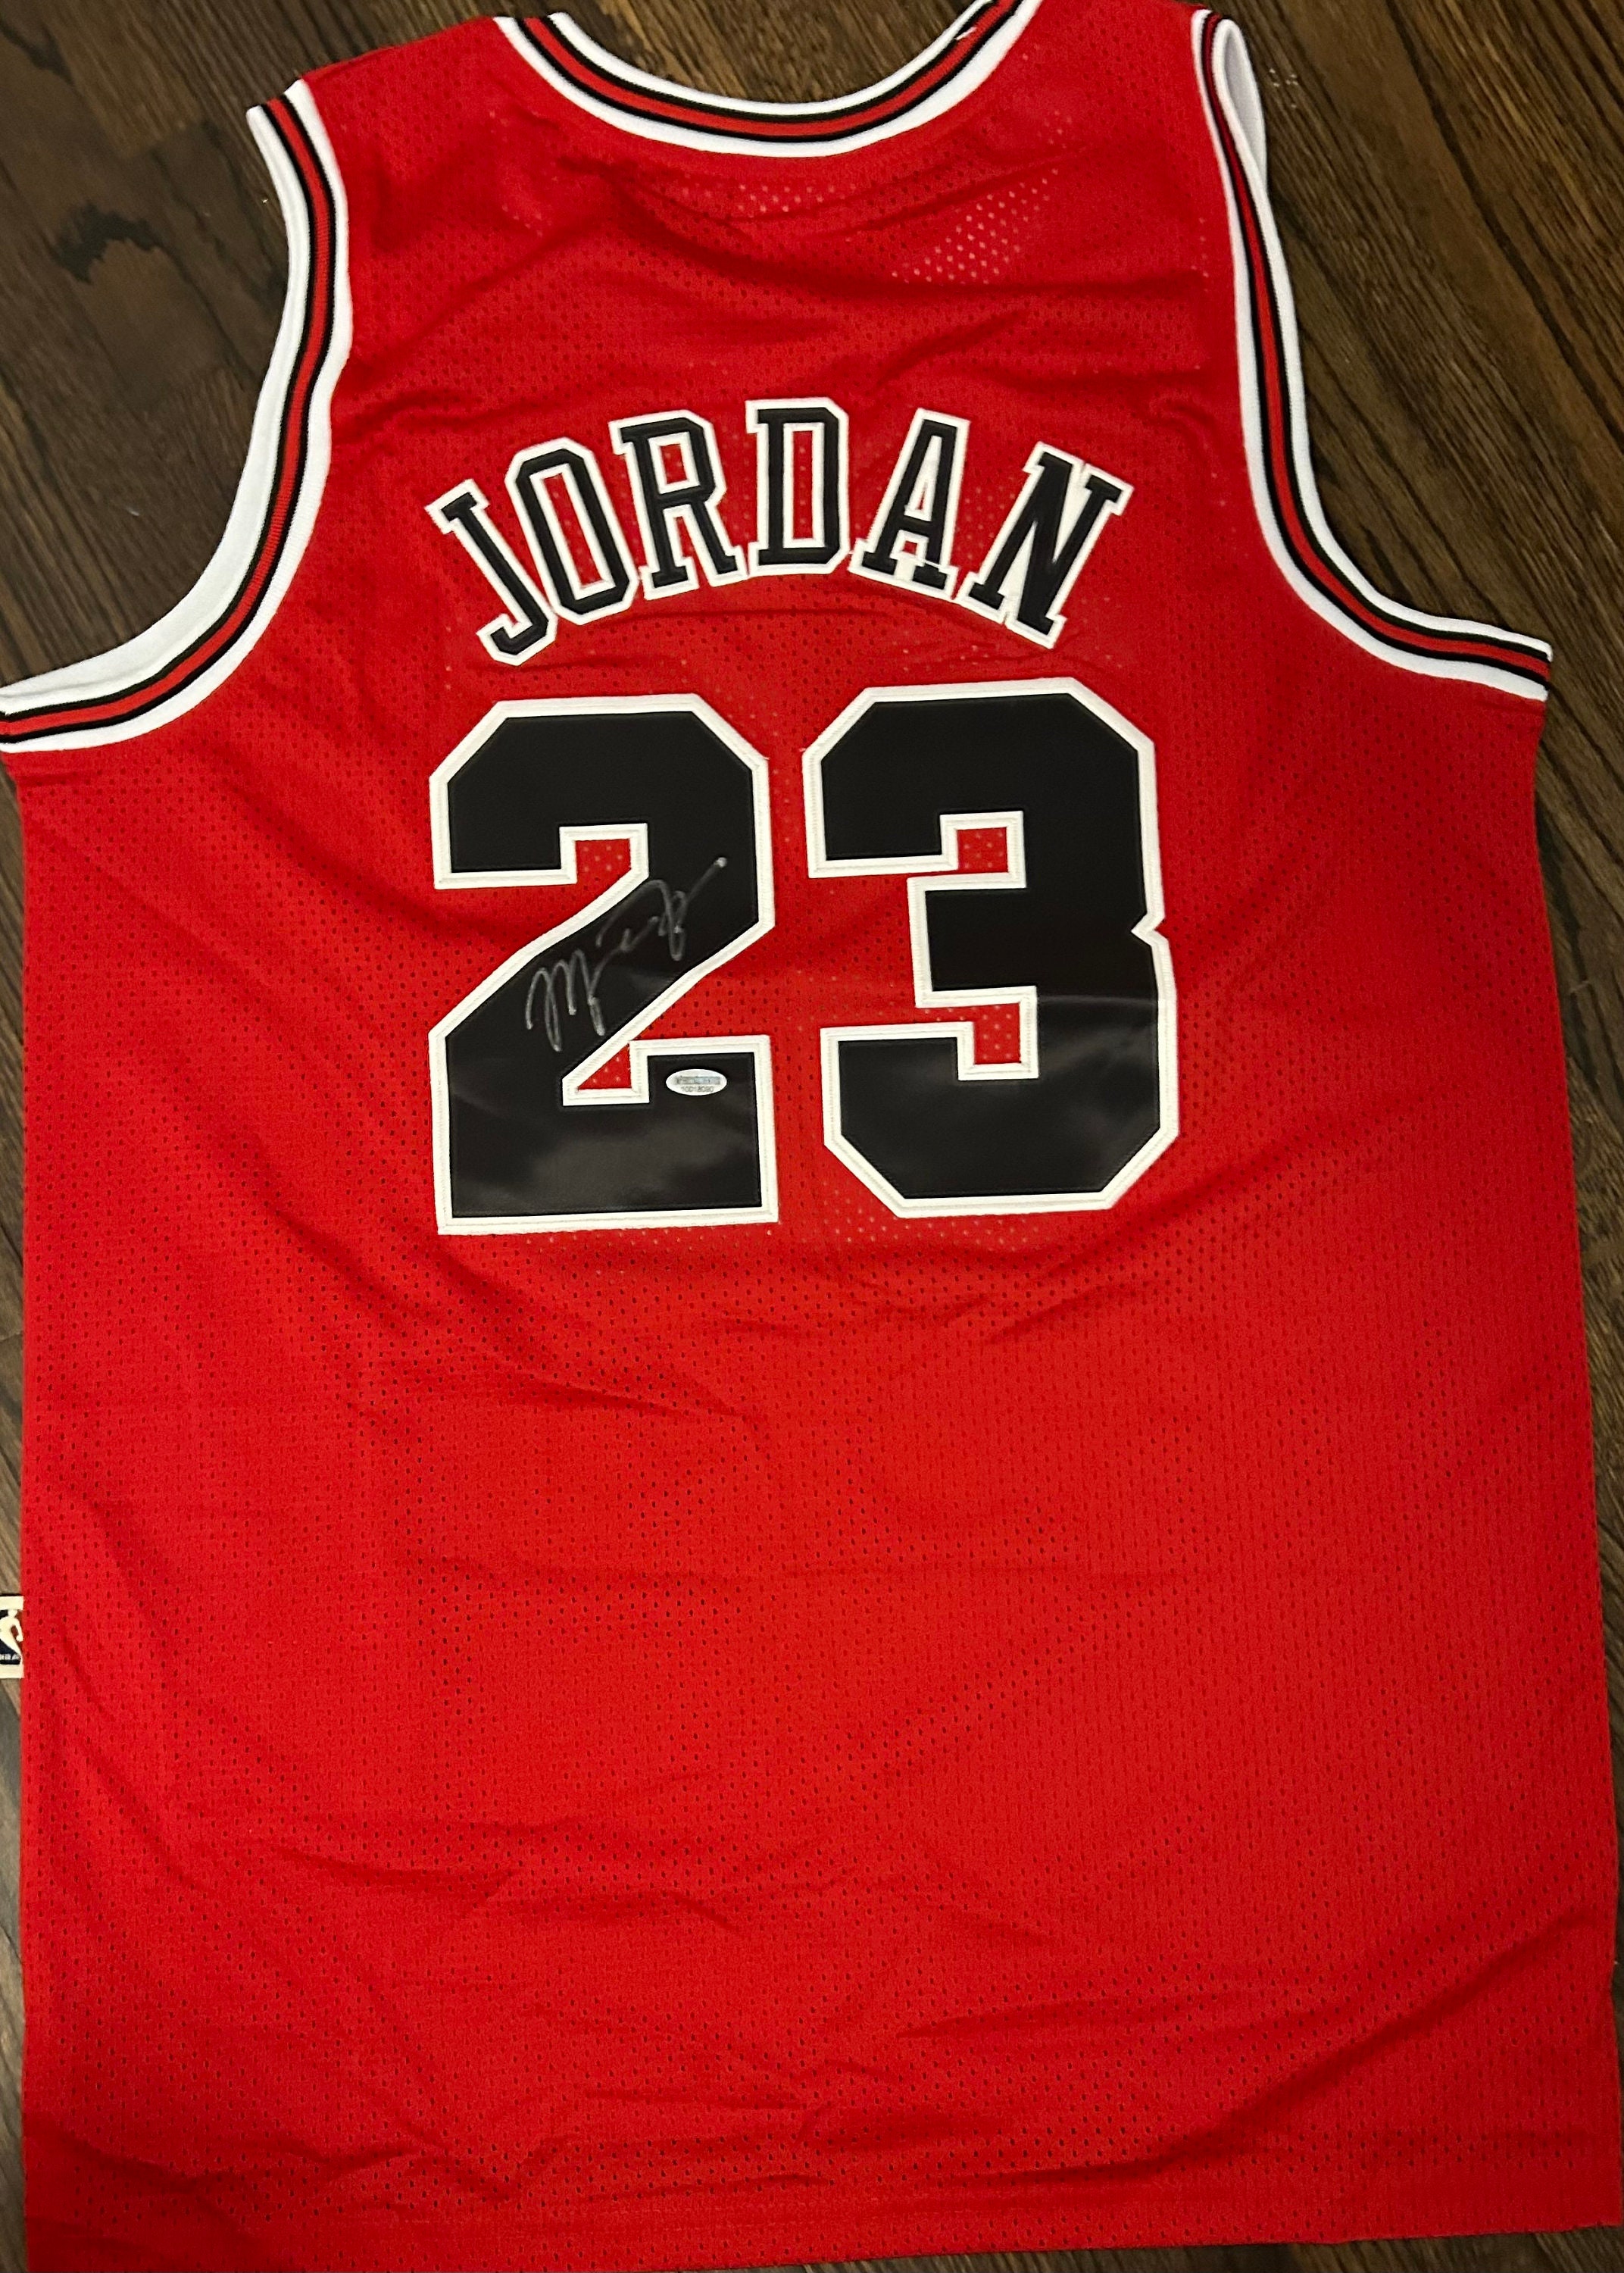 Michael Jordan Signed Wilson Used Golf Bag (JSA LOA & UDA COA)